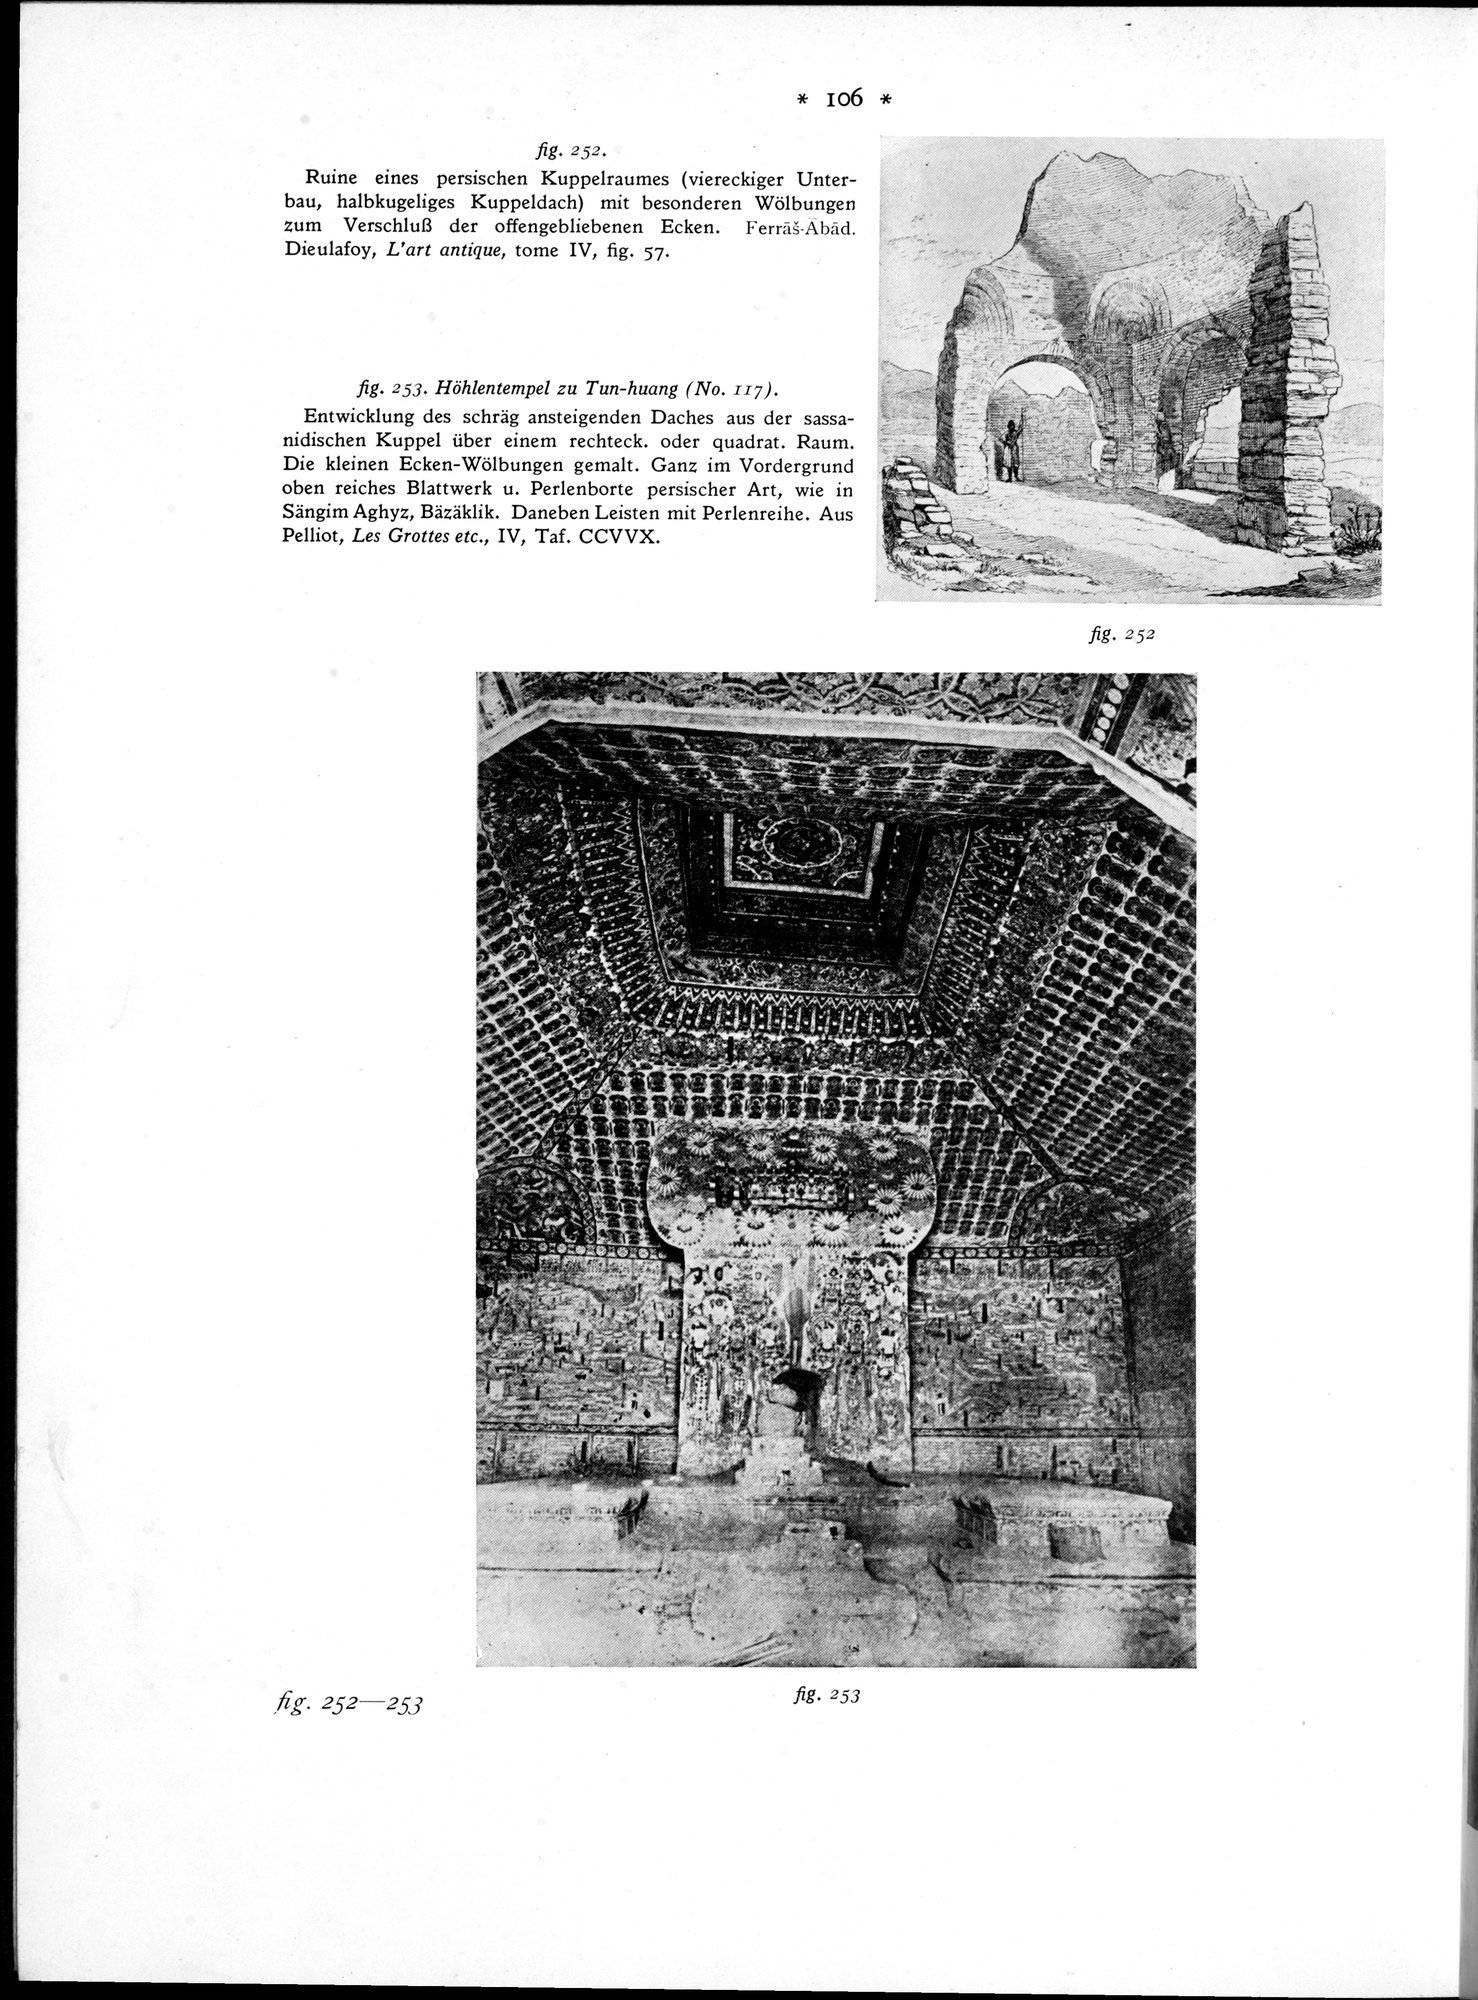 Bilderatlas zur Kunst und Kulturgeschichte Mittel-Asiens : vol.1 / Page 110 (Grayscale High Resolution Image)